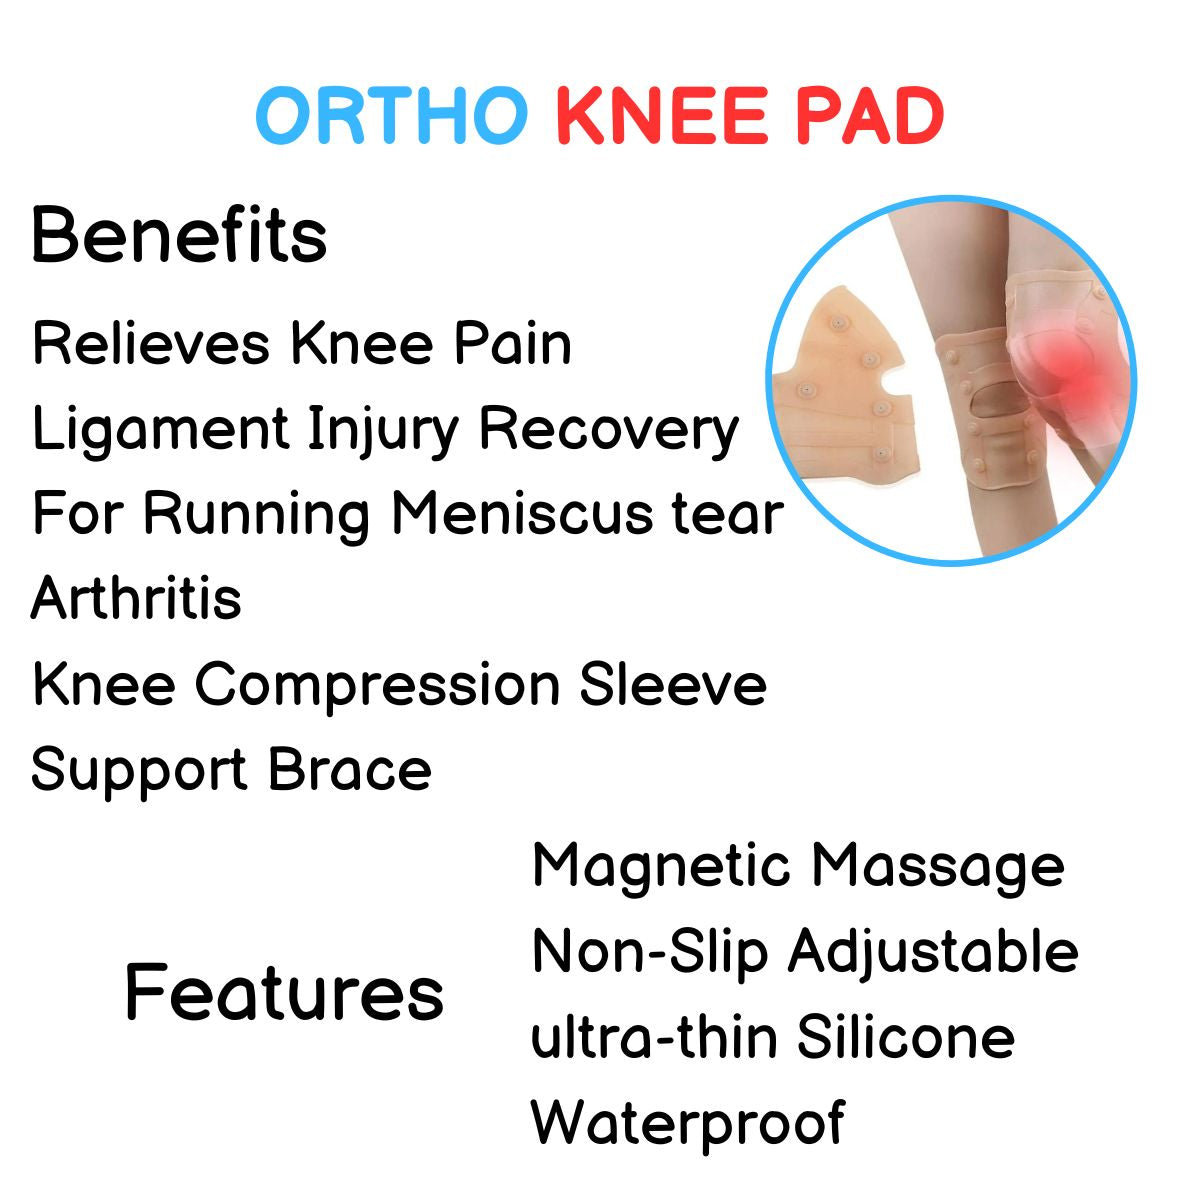 Ortho Knee Pad